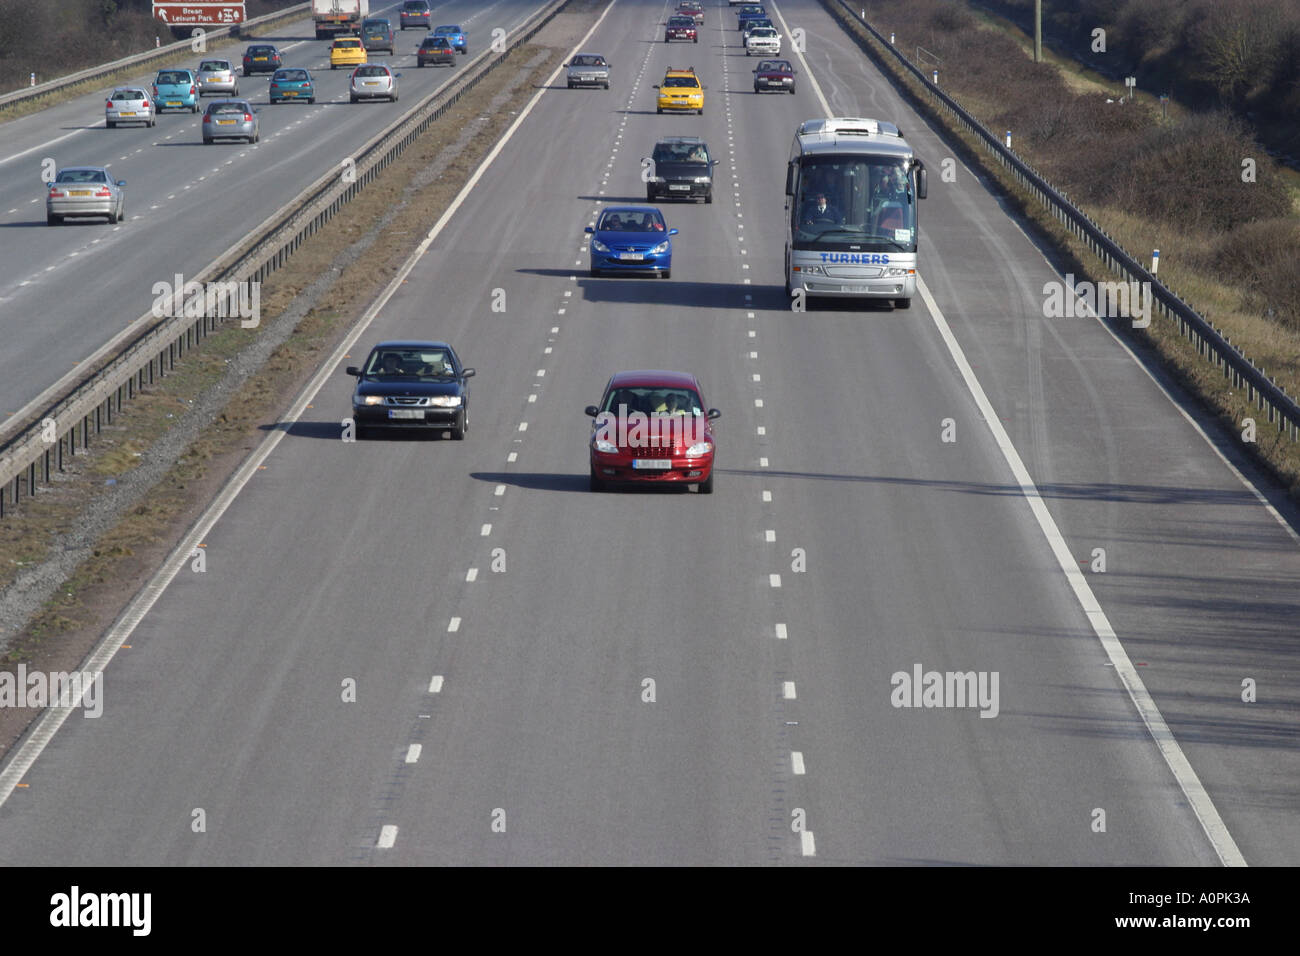 Coche Autopista de tráfico de vehículos de transporte por carretera Foto de stock